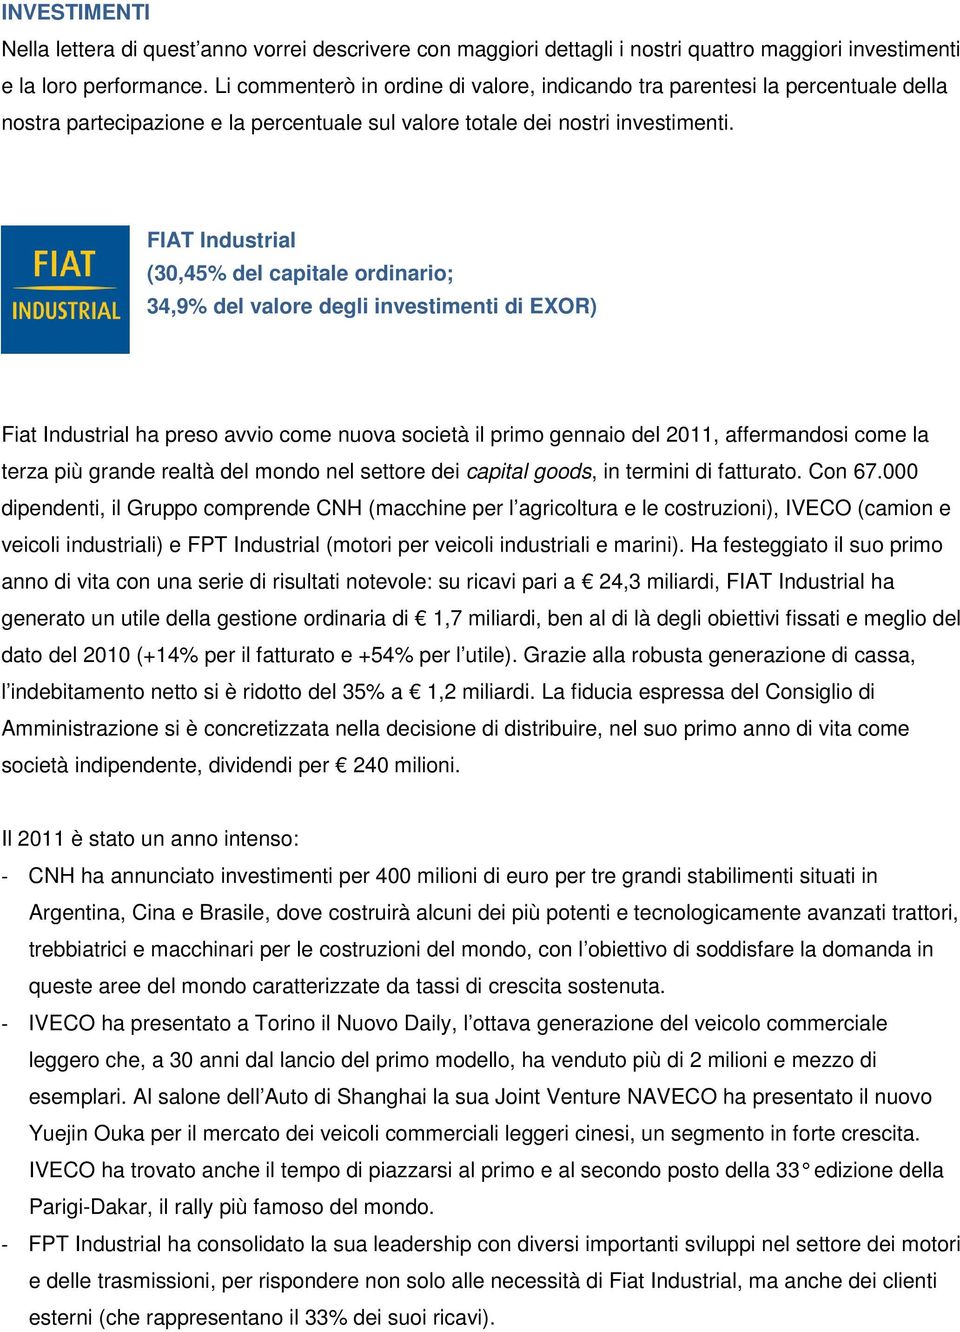 FIAT Industrial (30,45% del capitale ordinario; 34,9% del valore degli investimenti di EXOR) Fiat Industrial ha preso avvio come nuova società il primo gennaio del 2011, affermandosi come la terza